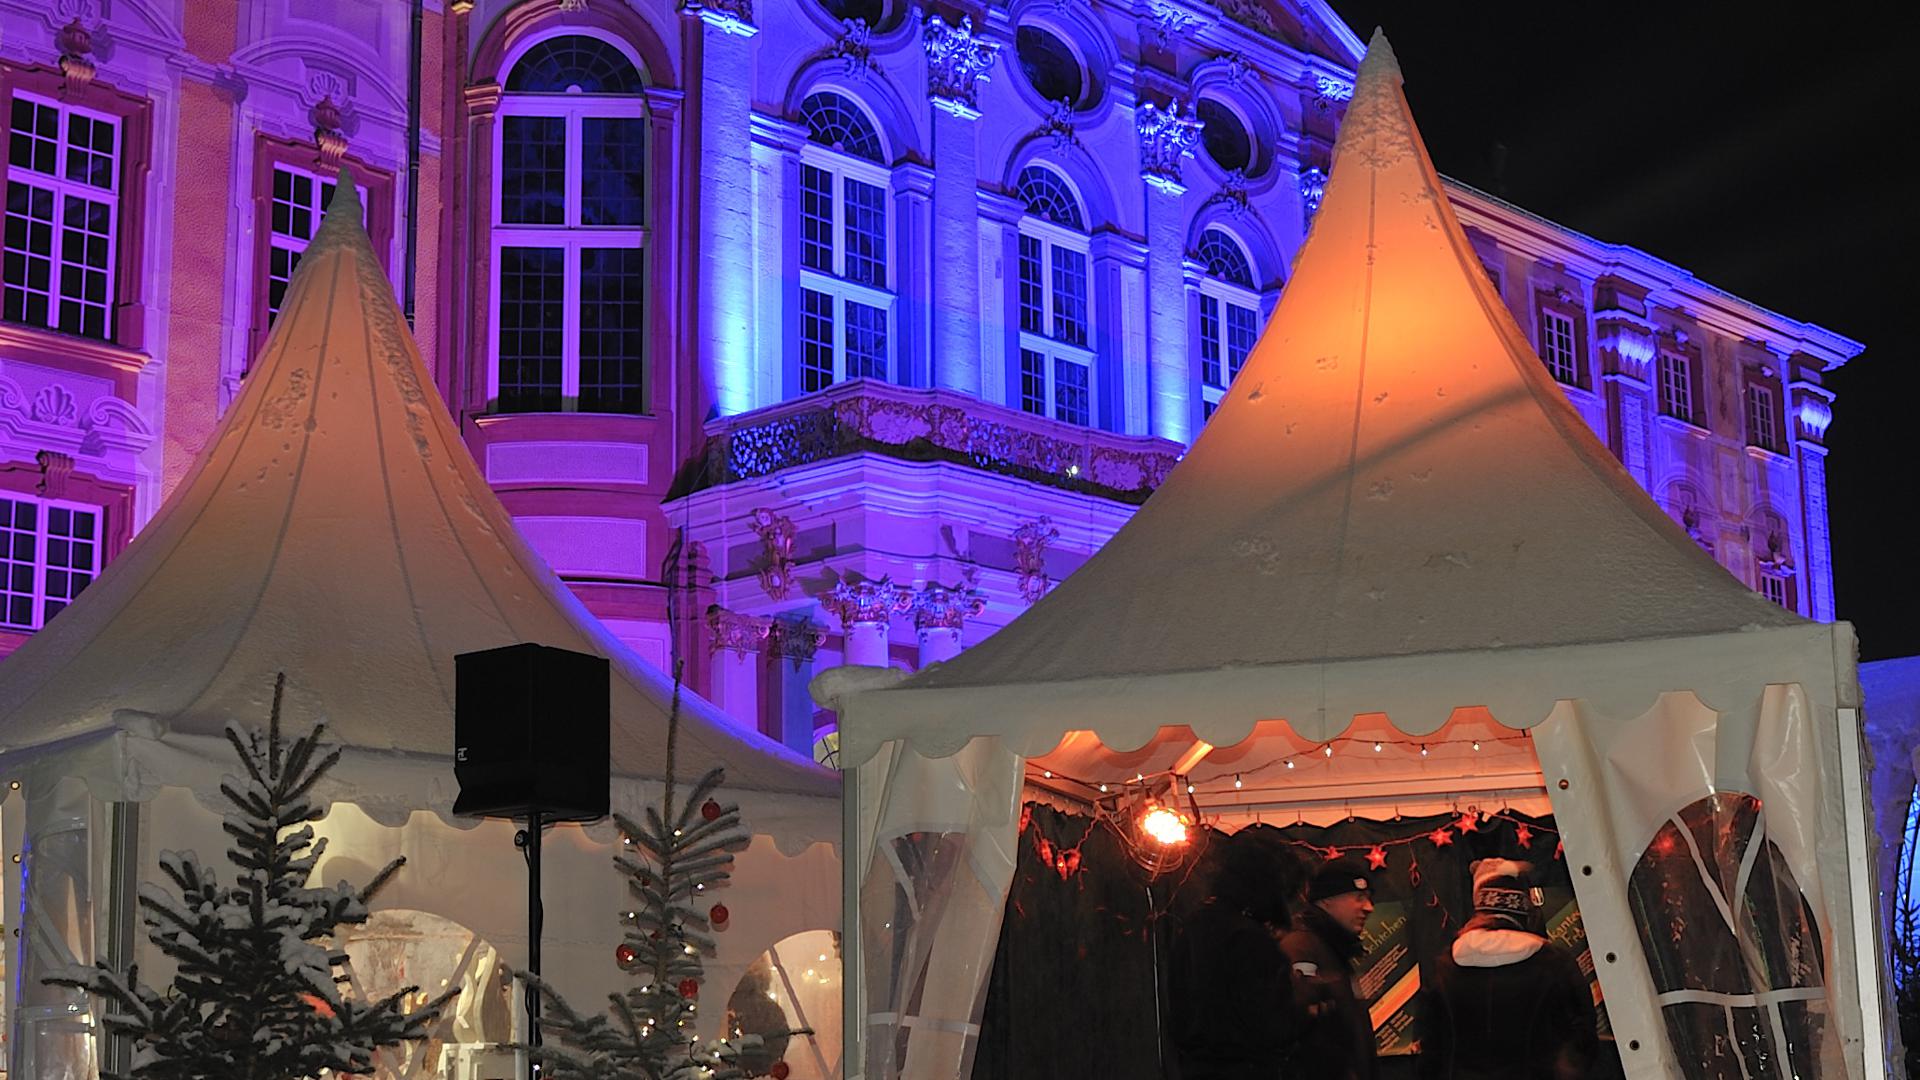 Die historische Kulisse des Barockschlosses erstrahlt in einem bezaubernden Lichtermeer und trägt zur weihnachtlichen Atmosphäre des Adventsmarktes bei.